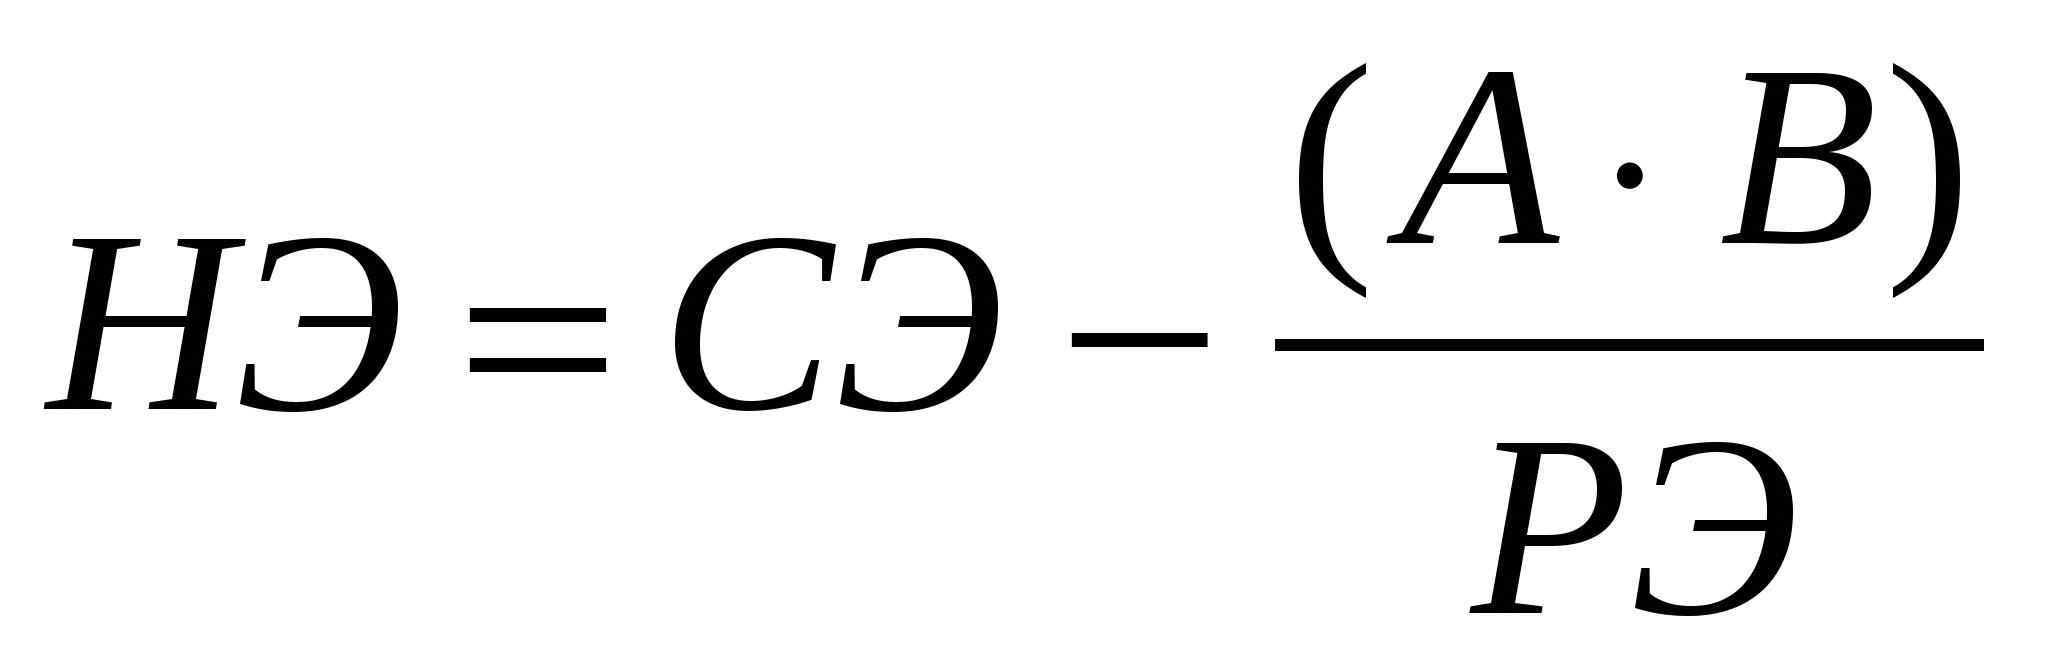 Решение задачи ЛП симплекс-методом (опорный конспект в виде разобранного примера)